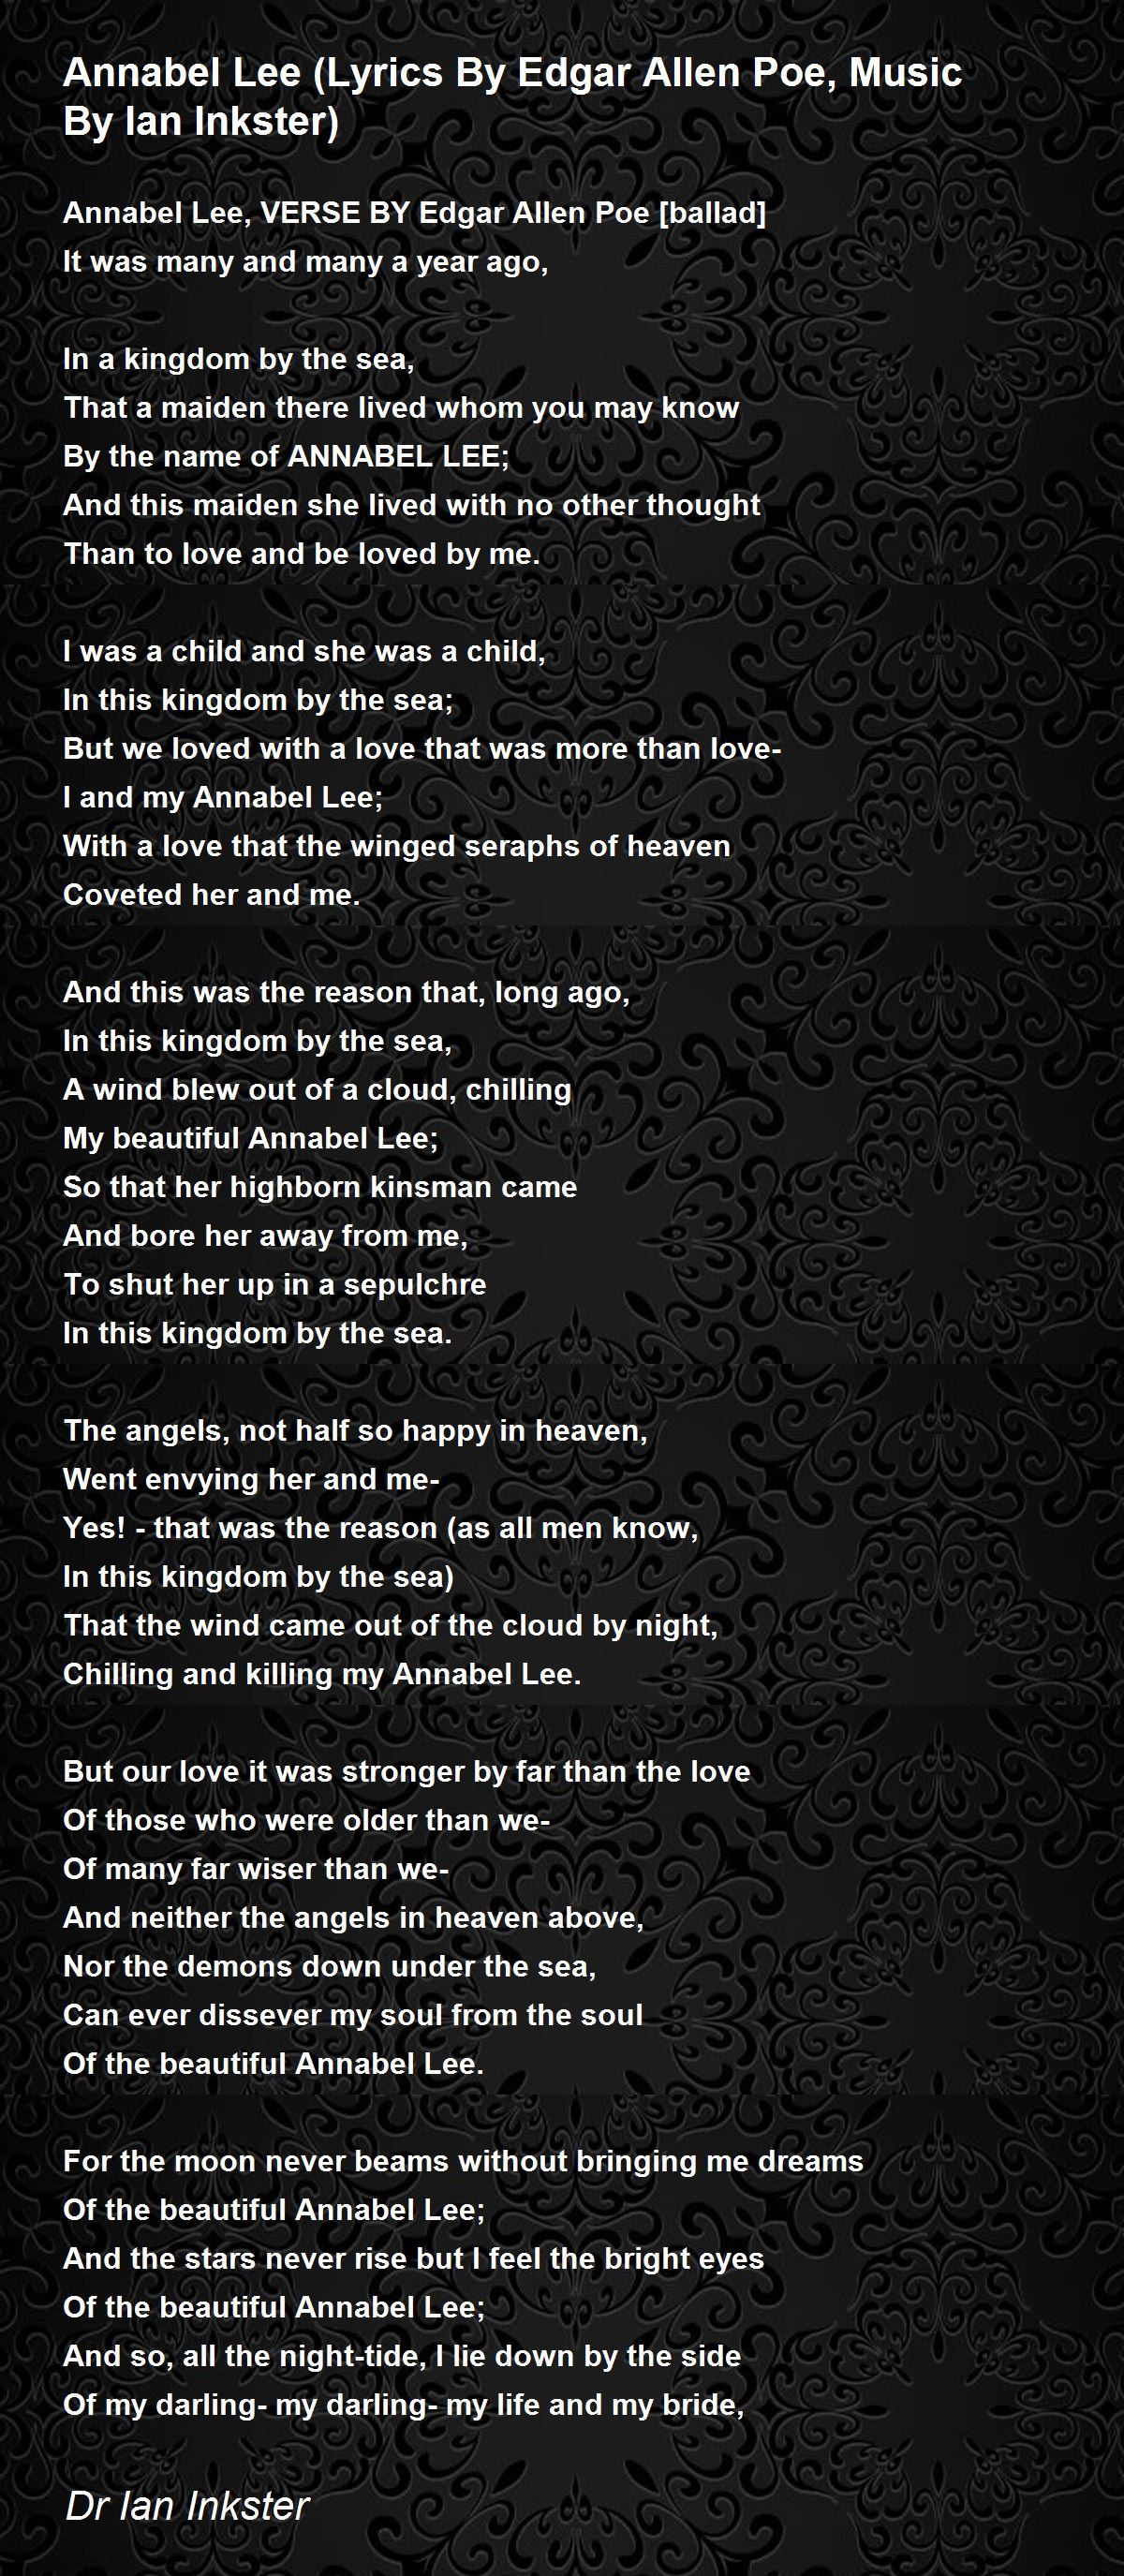 Annabel Lee (Lyrics By Edgar Allen Poe, Music By Ian Inkster) - Annabel Lee  (Lyrics By Edgar Allen Poe, Music By Ian Inkster) Poem by Dr Ian Inkster